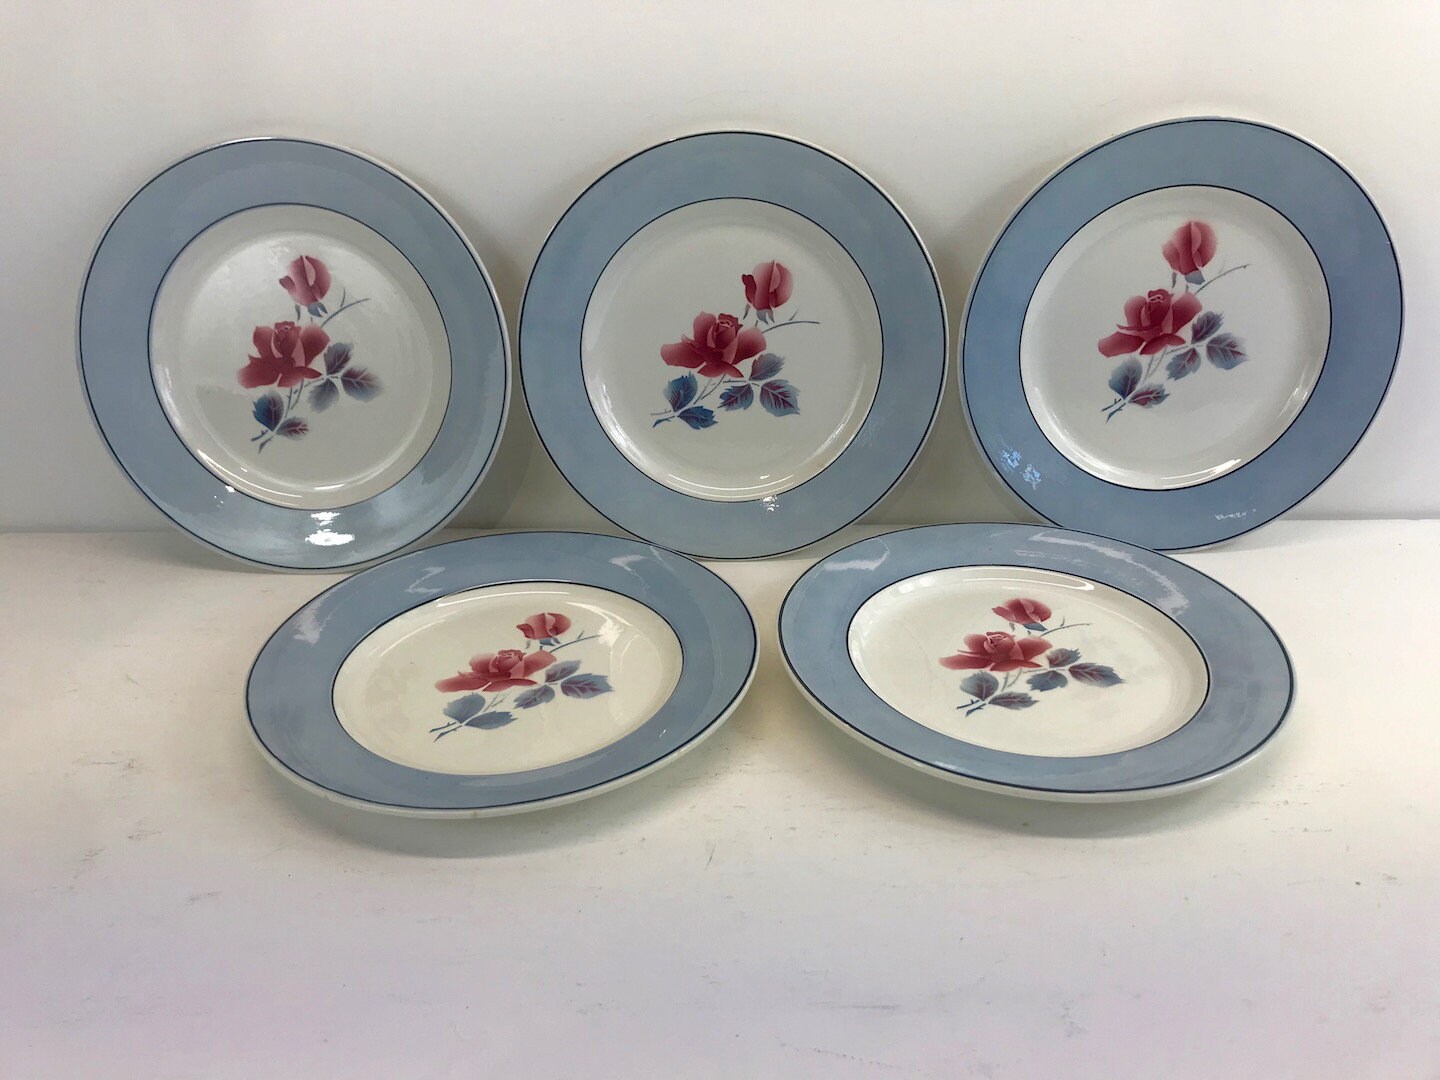 Vintage Français Transferware Dinner Plates, Set de 5, Sarreguemines Digoin, Red Rose Flowers, Shabb